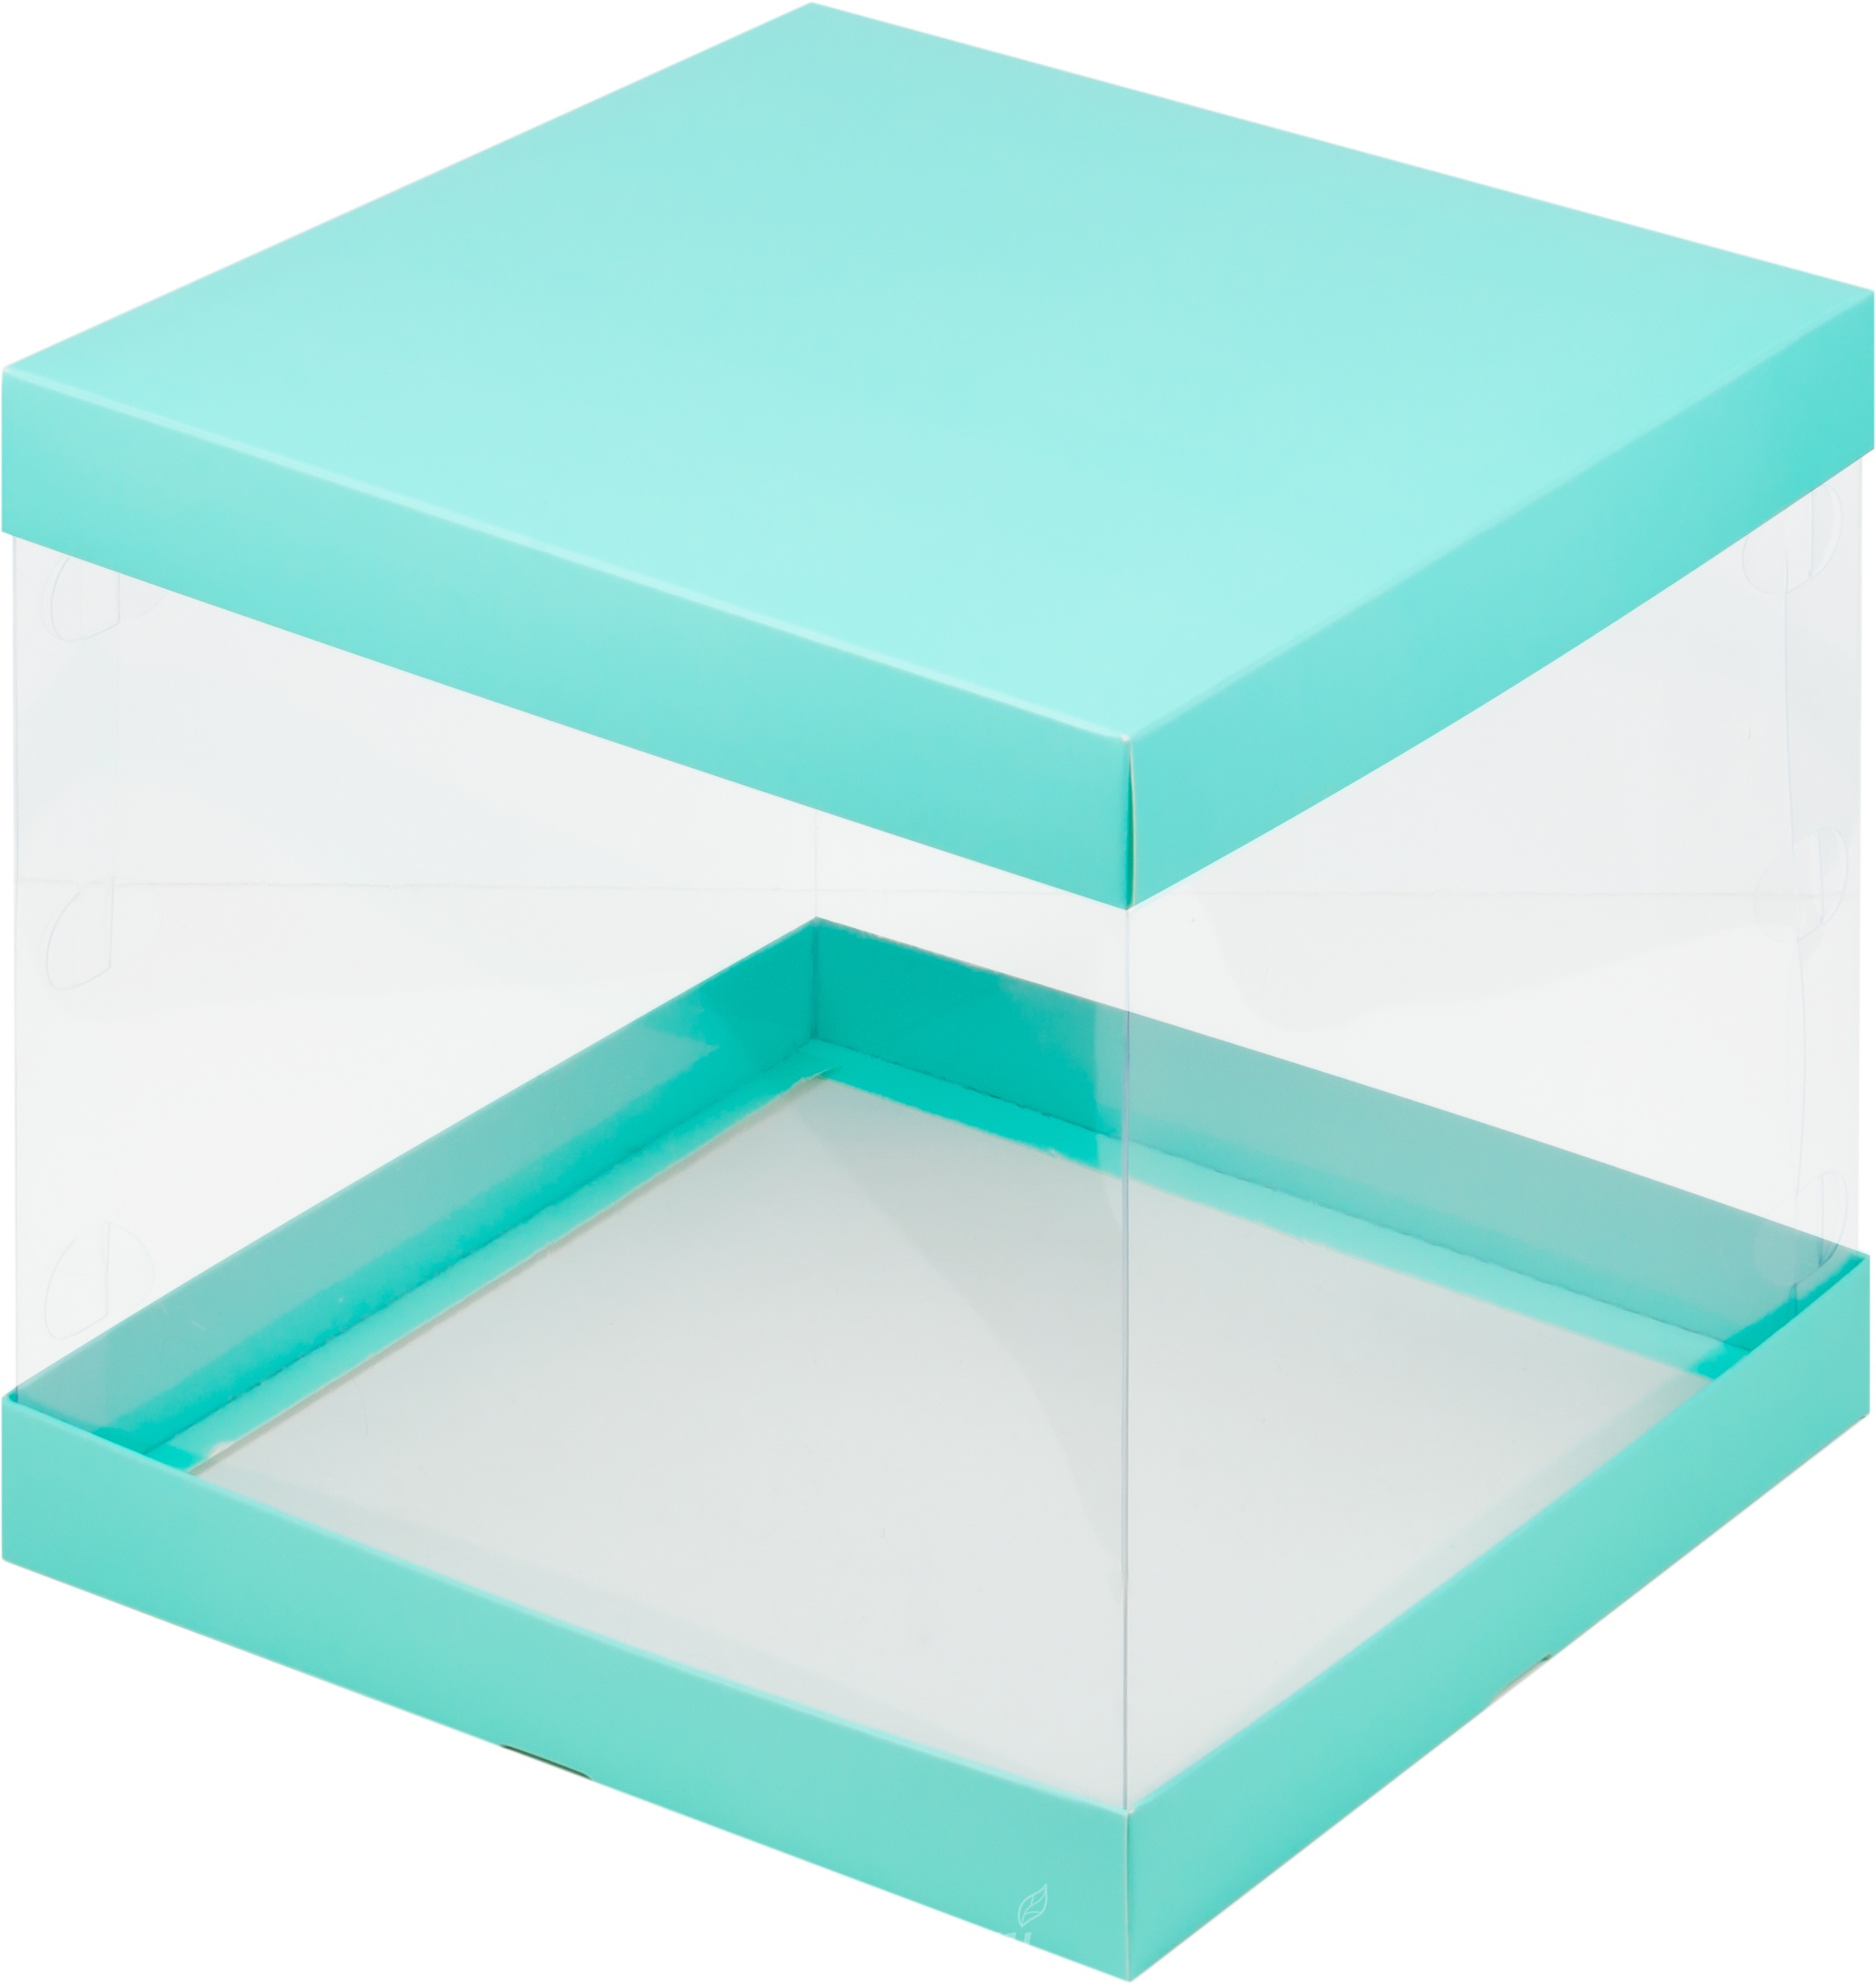 Как собрать прозрачную коробку. Коробка под торт с прозрачными стенками 23,5х23,5х22 см (белая). Складная коробка 26х26х28 с прозрачными стенками цвет Тиффани. Коробка для торта 40х40х15 прозрачная OZON. Коробка для Бента торта с прозрачными стенками 160х160х140мм, крафт.